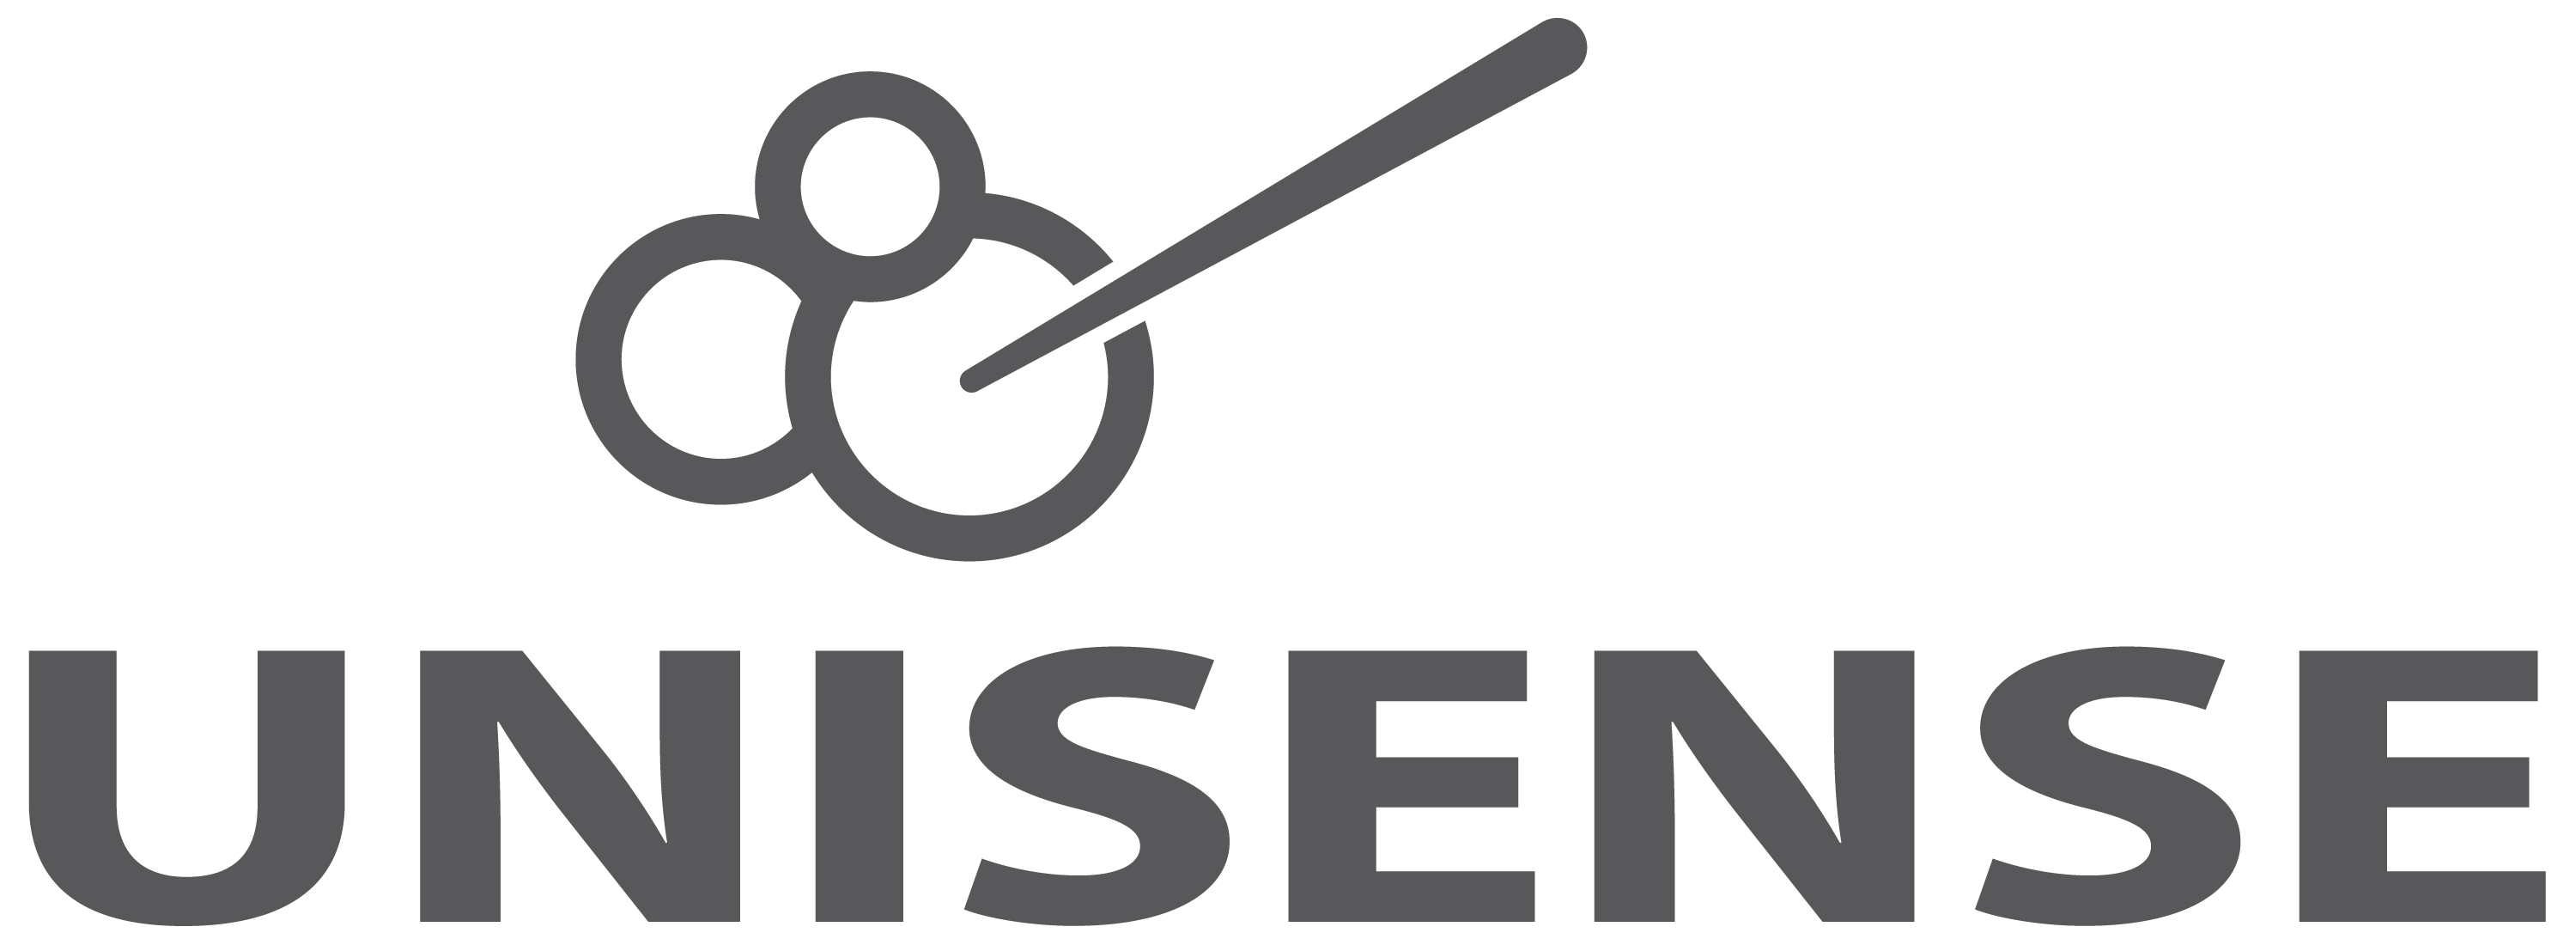 Unisense - logo2017_final.png